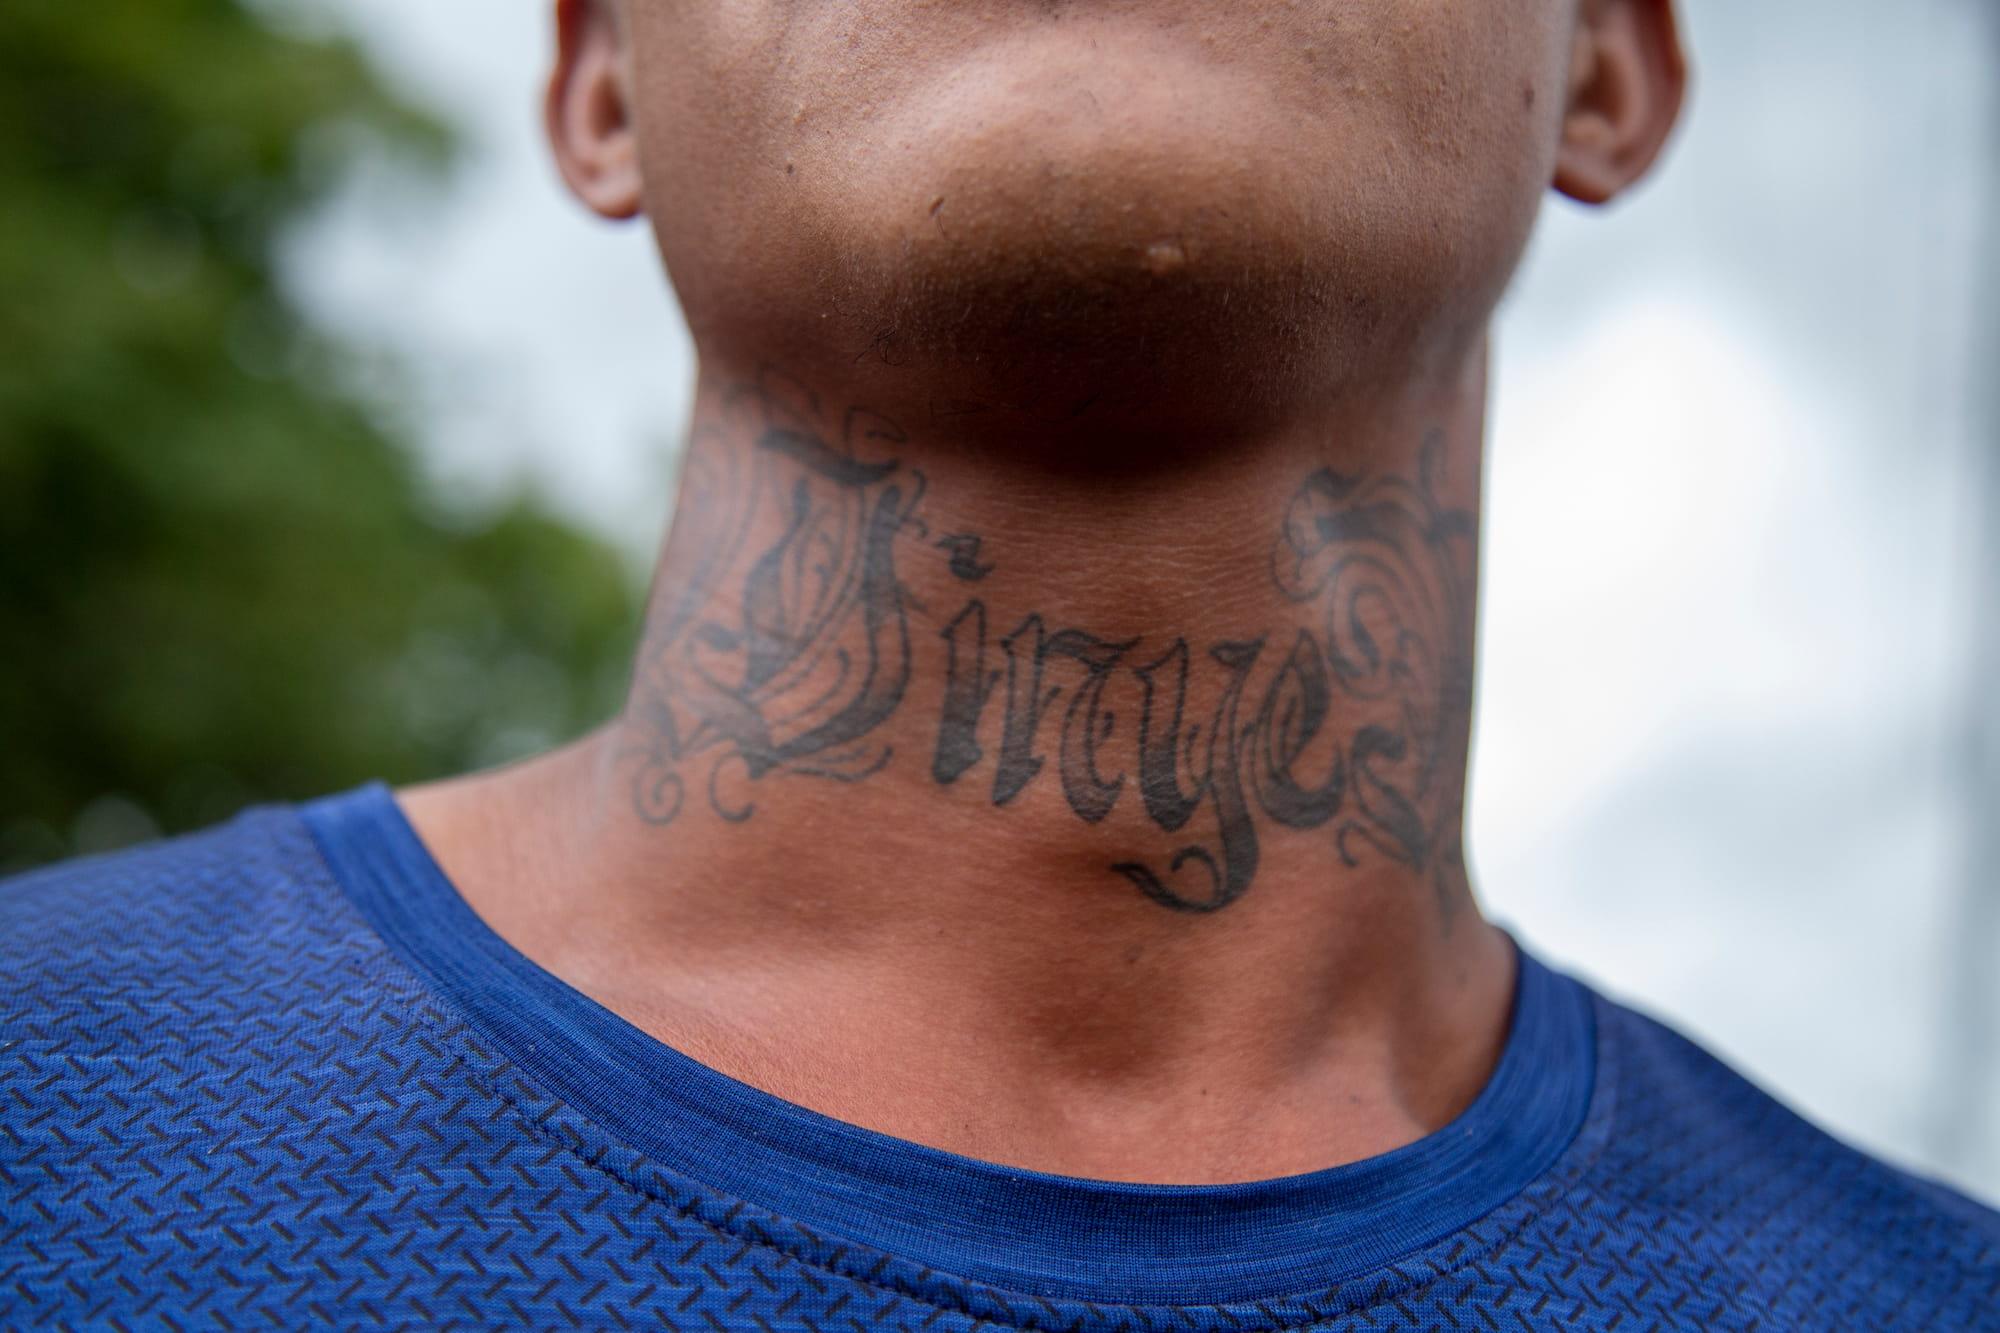 «Winyers», detalle del tatuaje en el cuello con el nombre artístico de Wilmer Plaza, un rapero venezolano que intenta llegar a los Estados Unidos. Danlí, El Paraíso. Foto CC / Fernando Destephen.